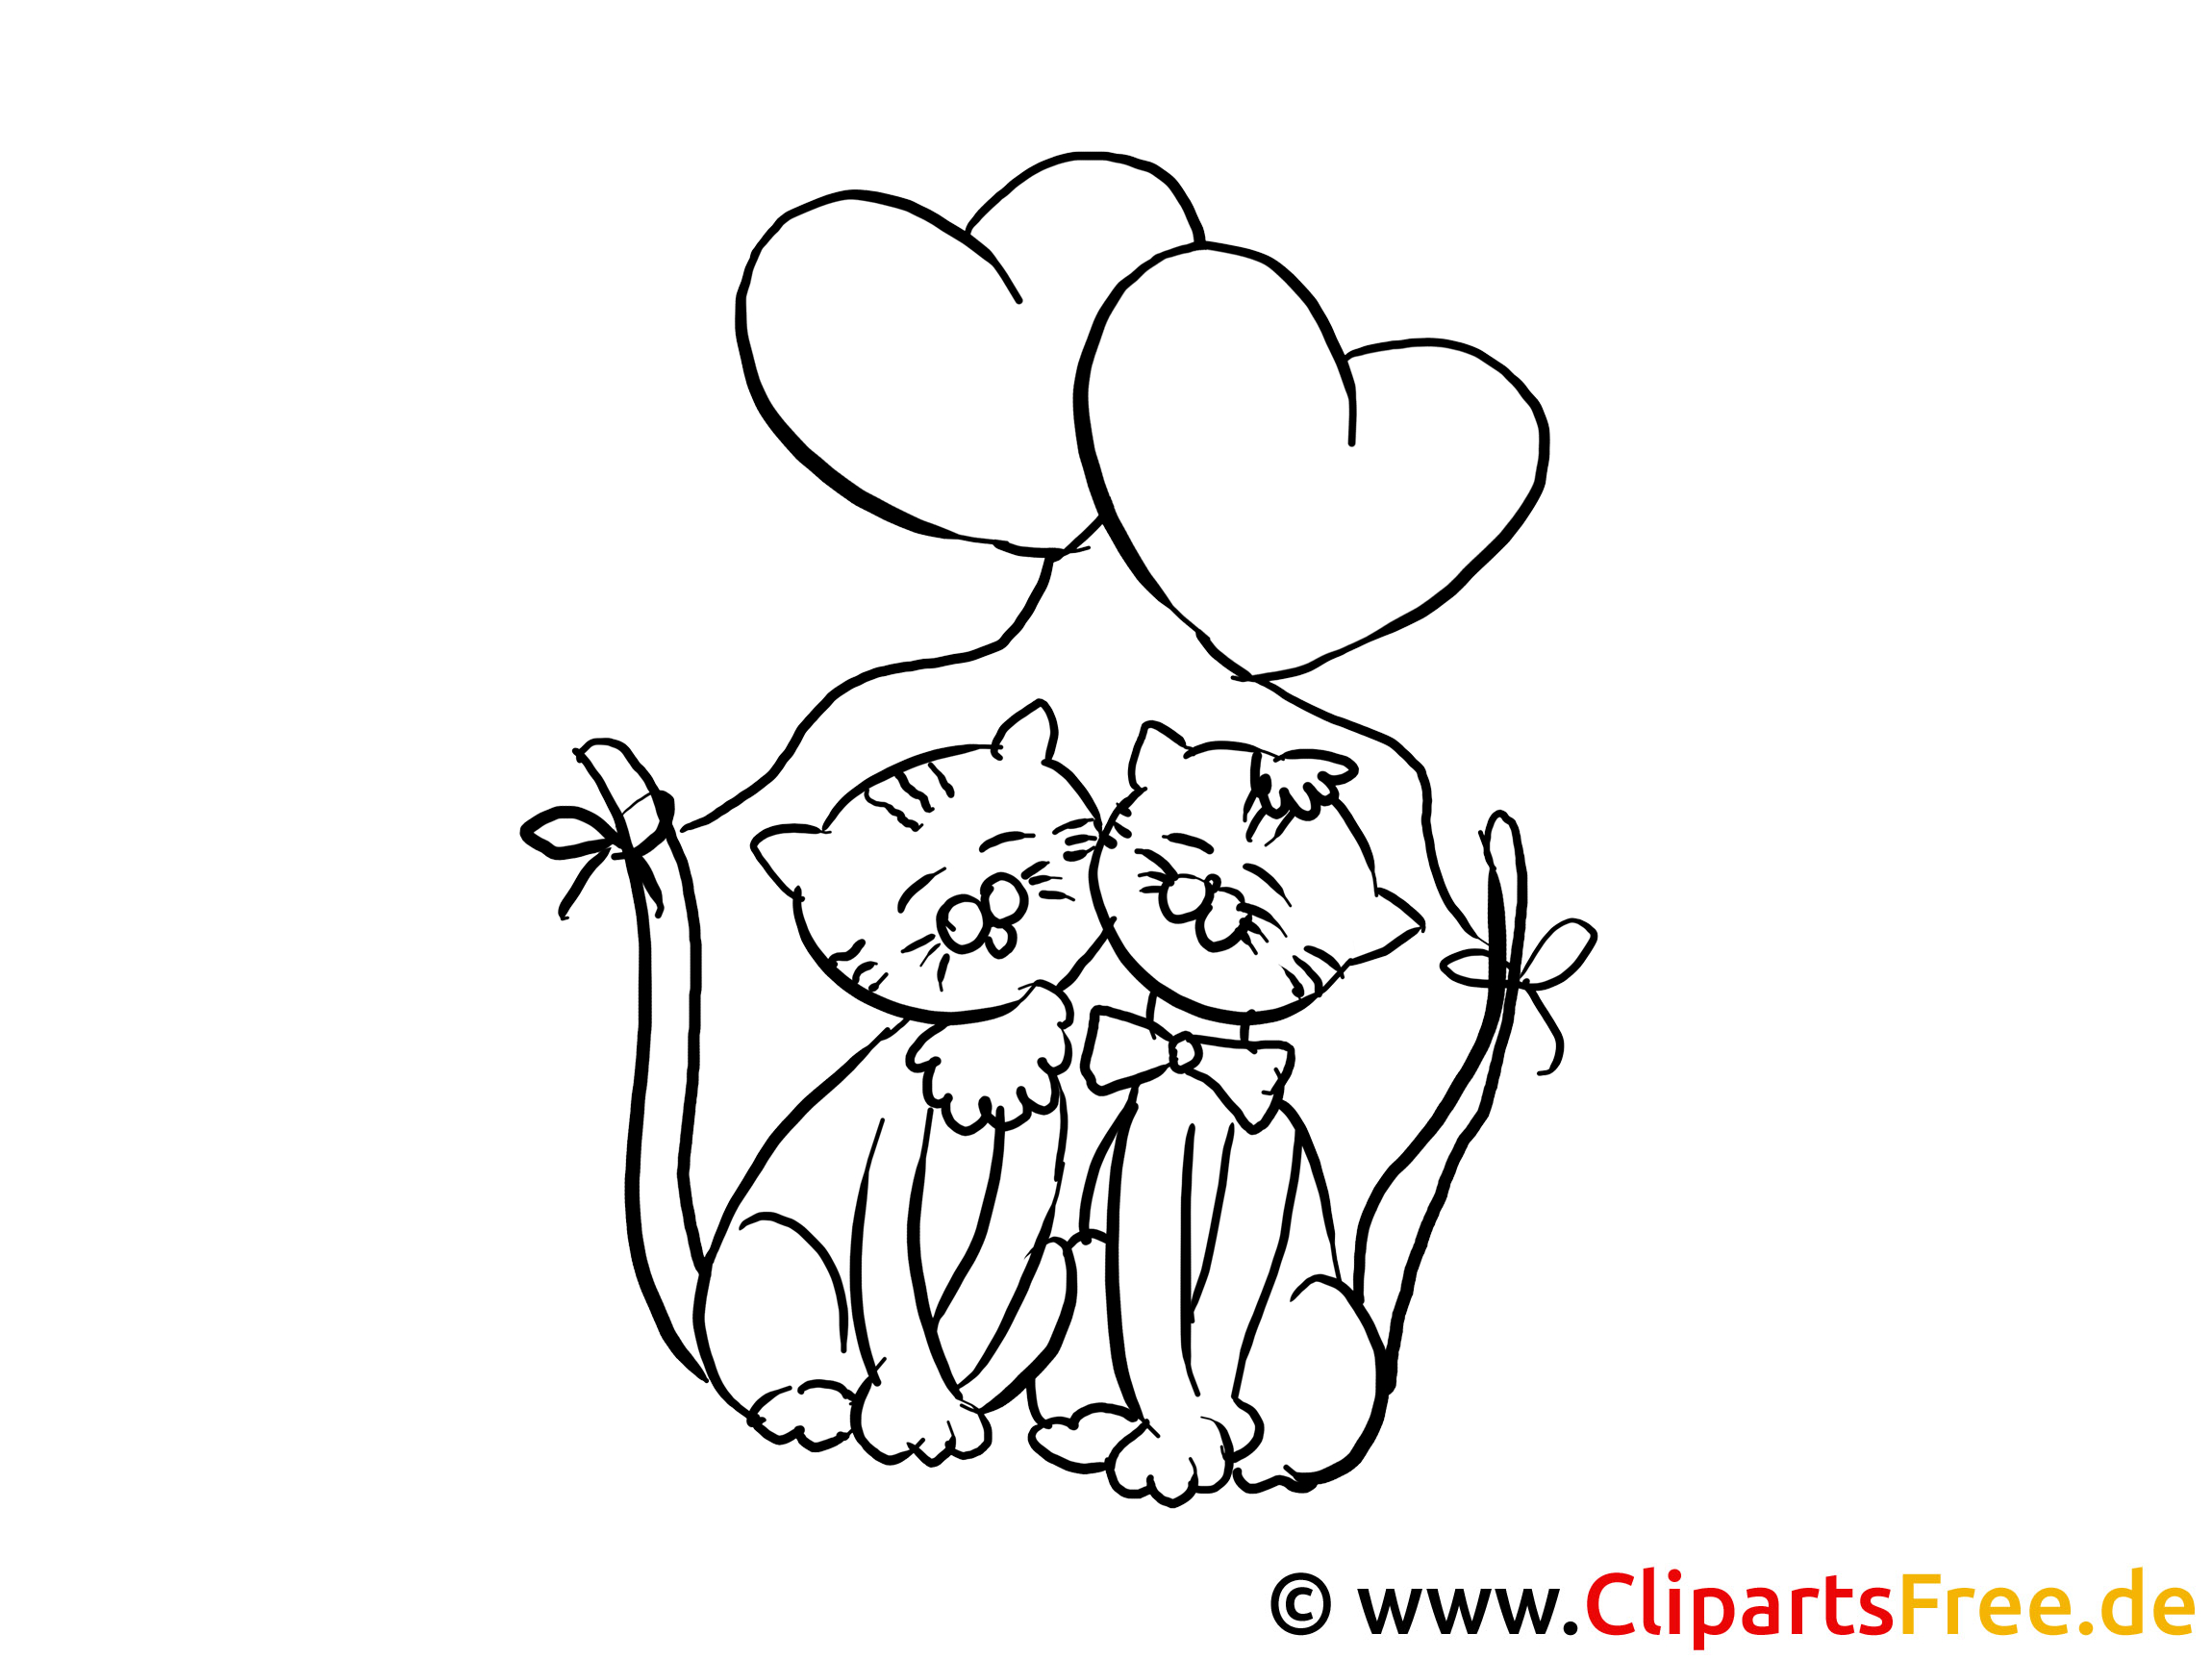 Katzen Valentinstag Ausmalbilder Für Kinder Kostenlos Ausdrucken für Kinder Bilder Drucken Lassen